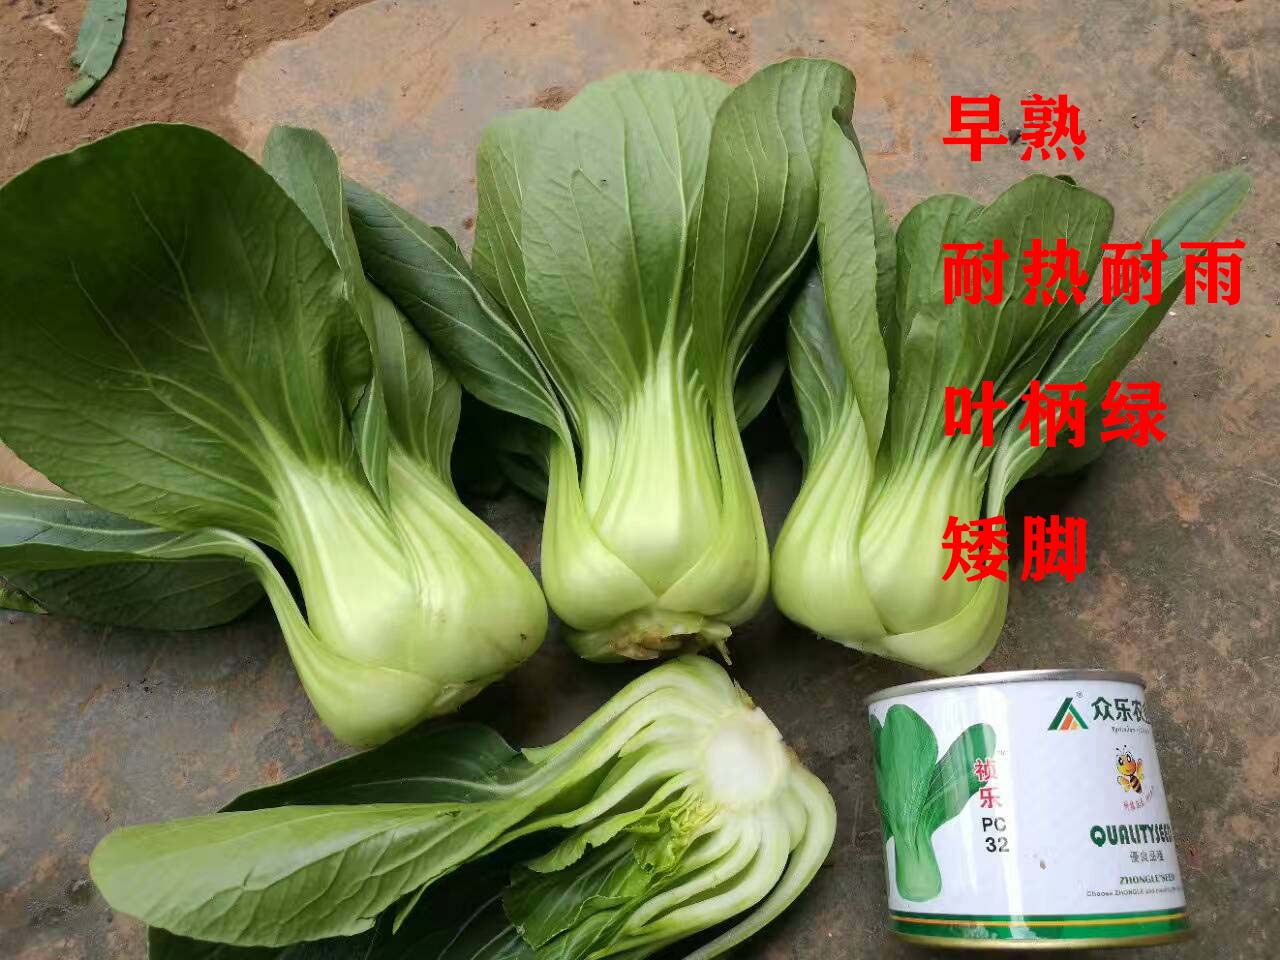 昆明瓢菜上海青种子150元一公斤 手慢无